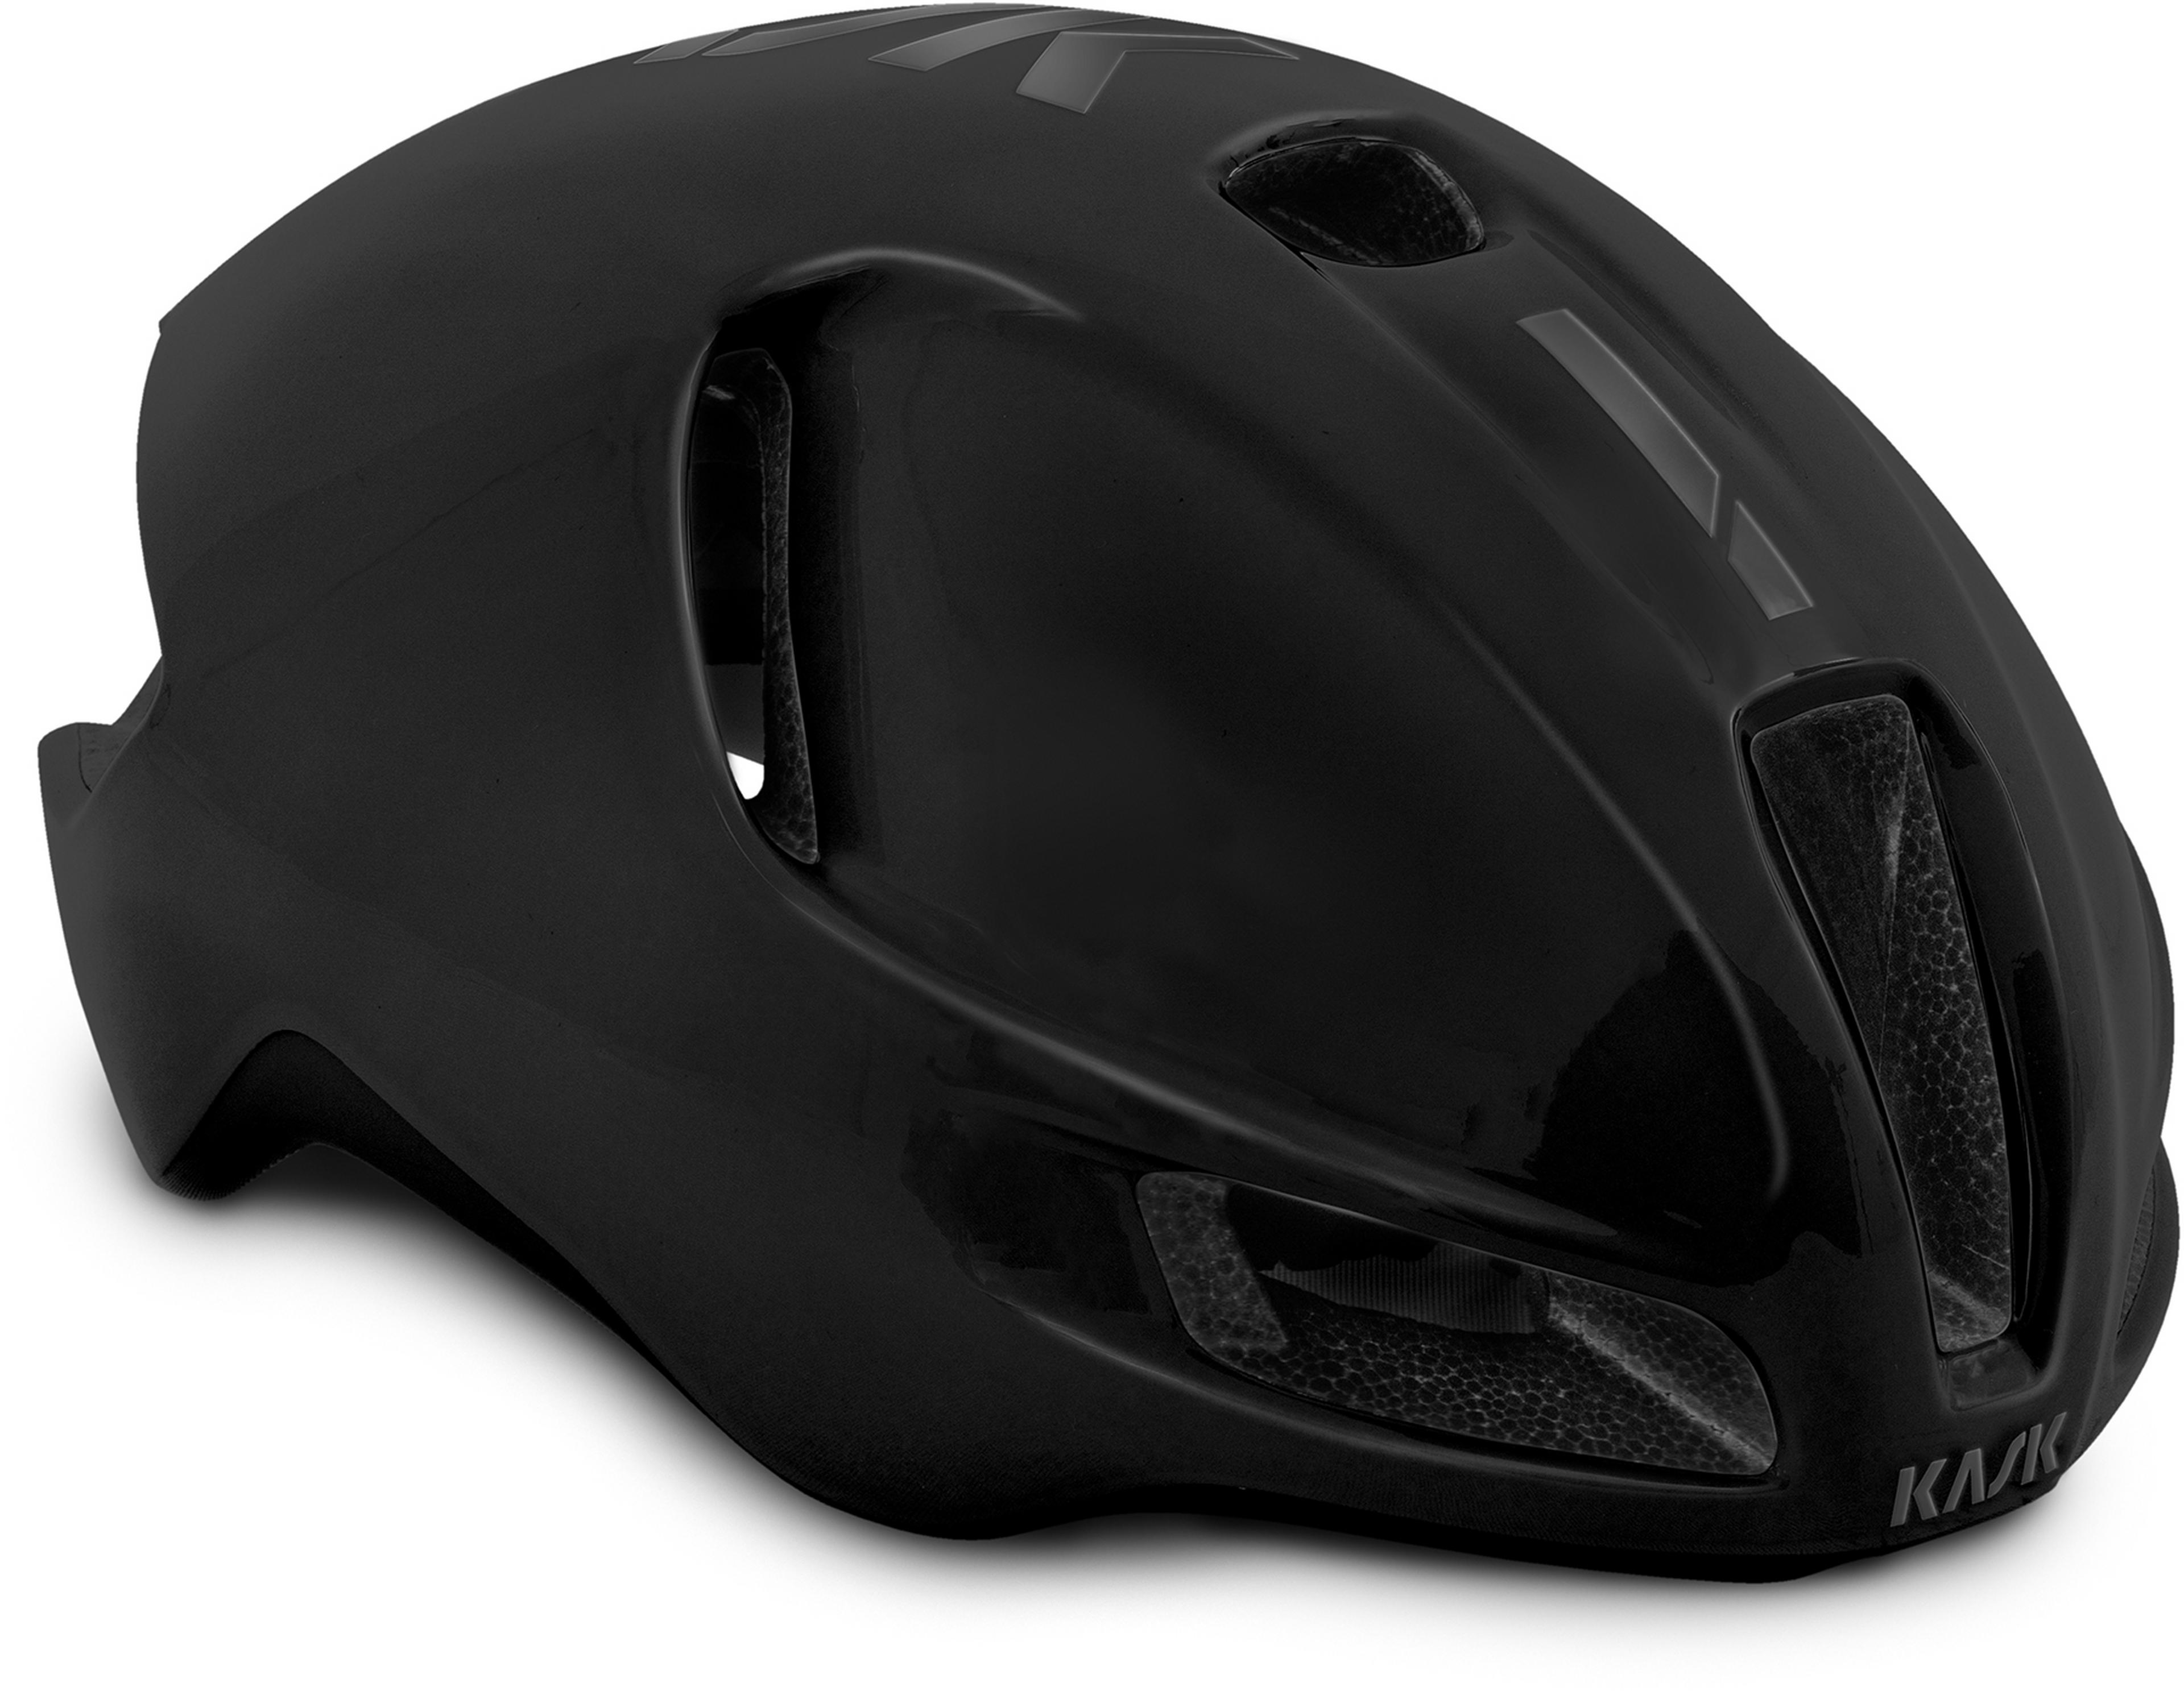 KASK Protone WG11 Road Helmet Black